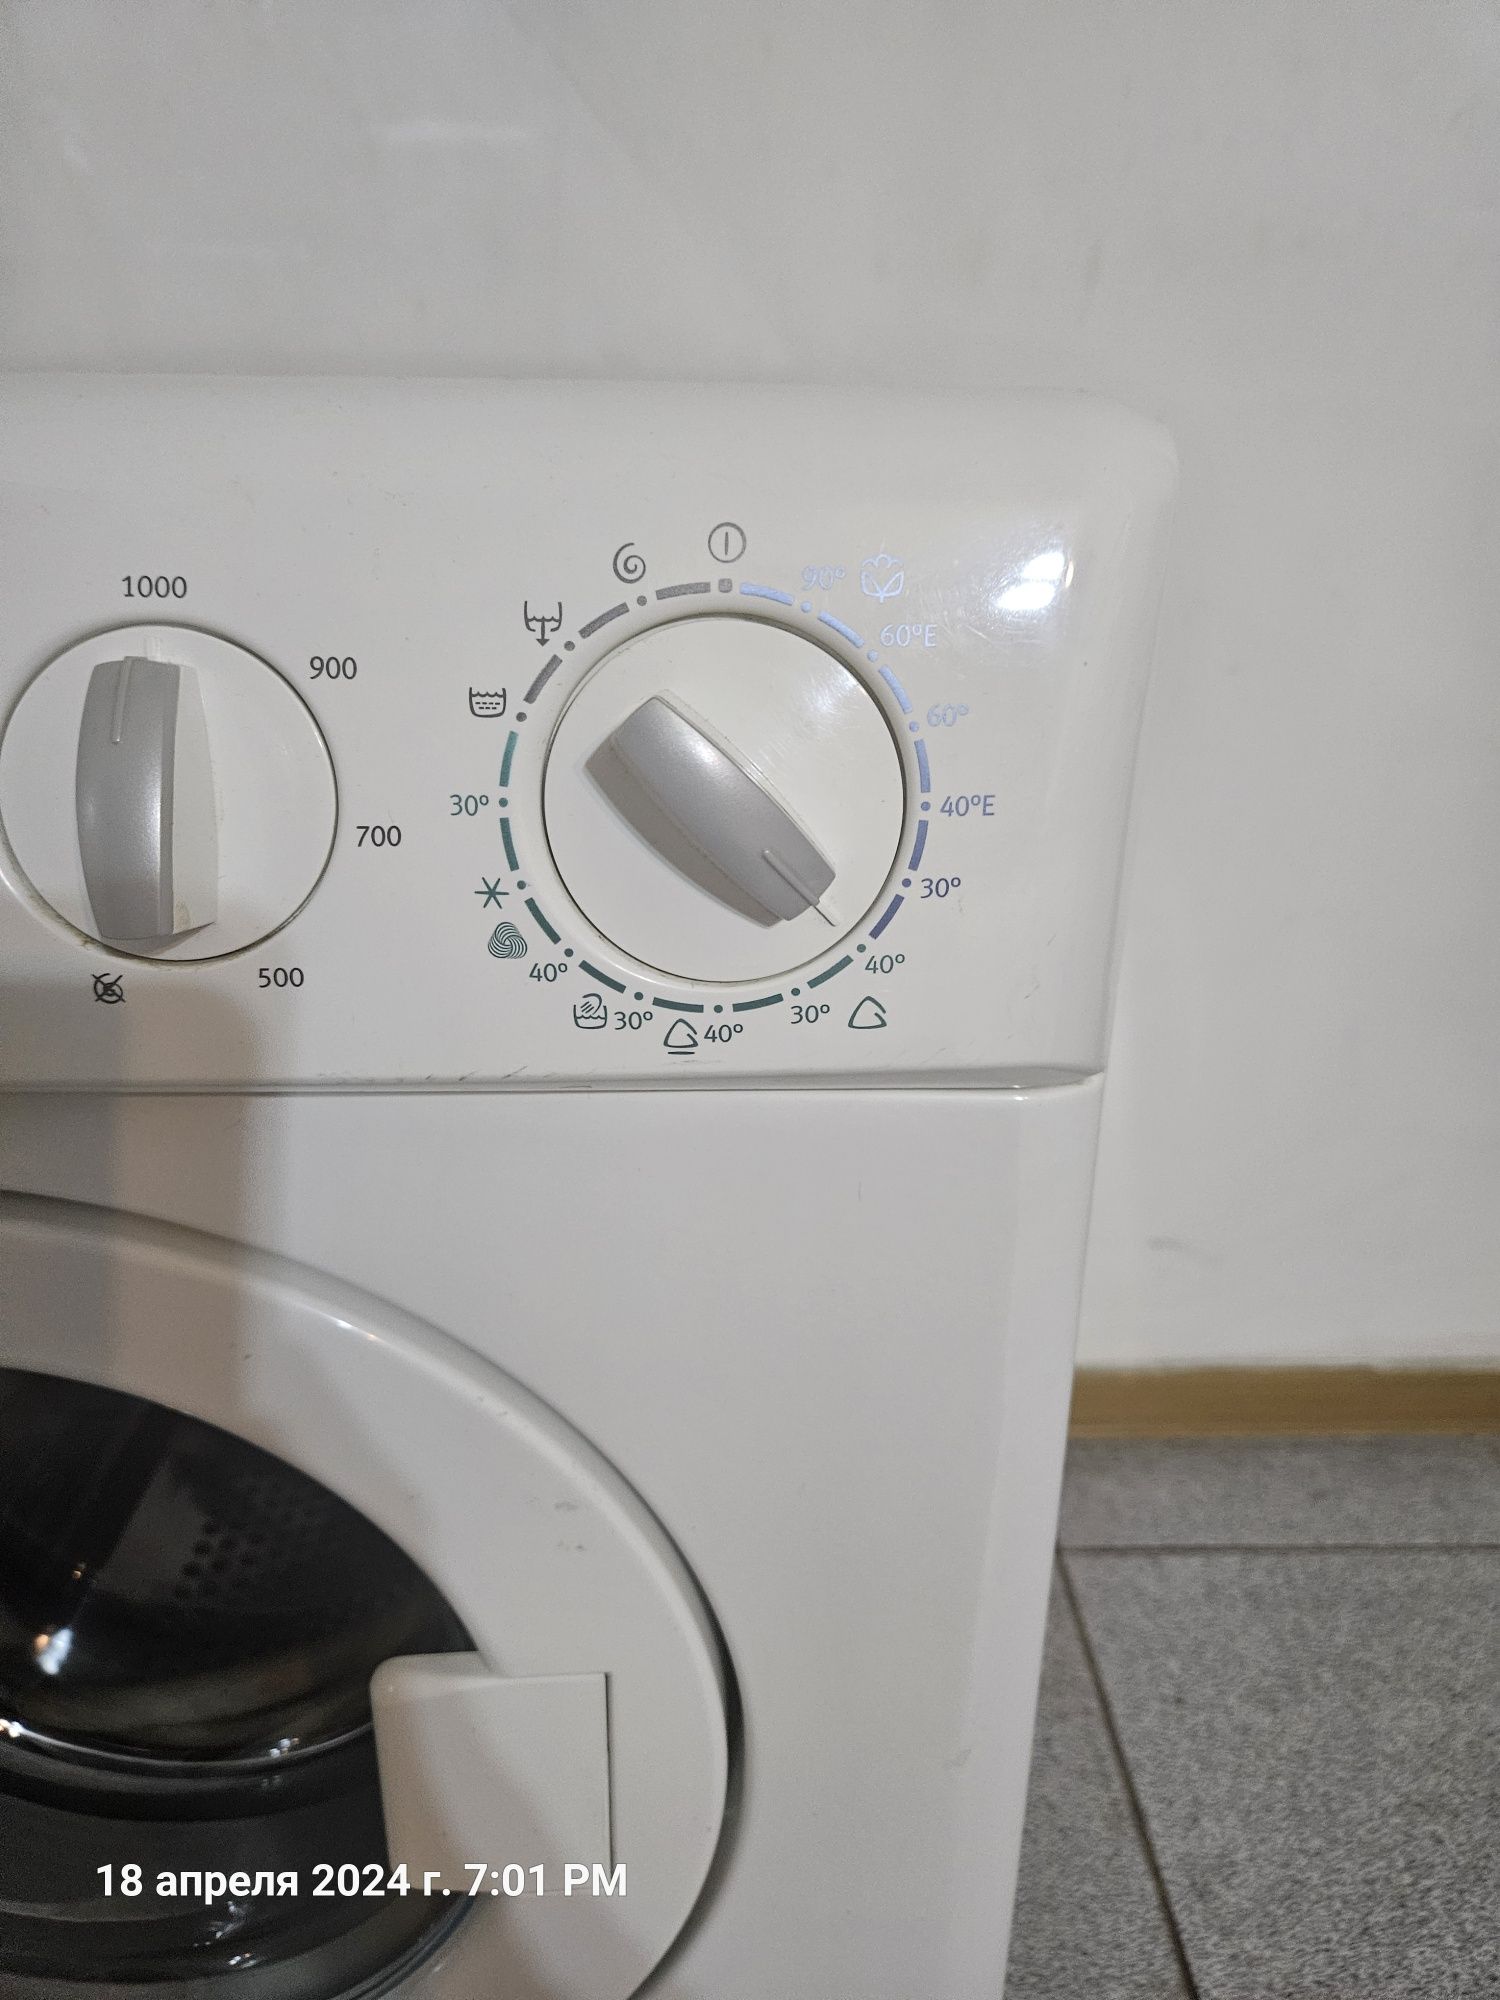 Electrolux стиральная машина автомат недорого